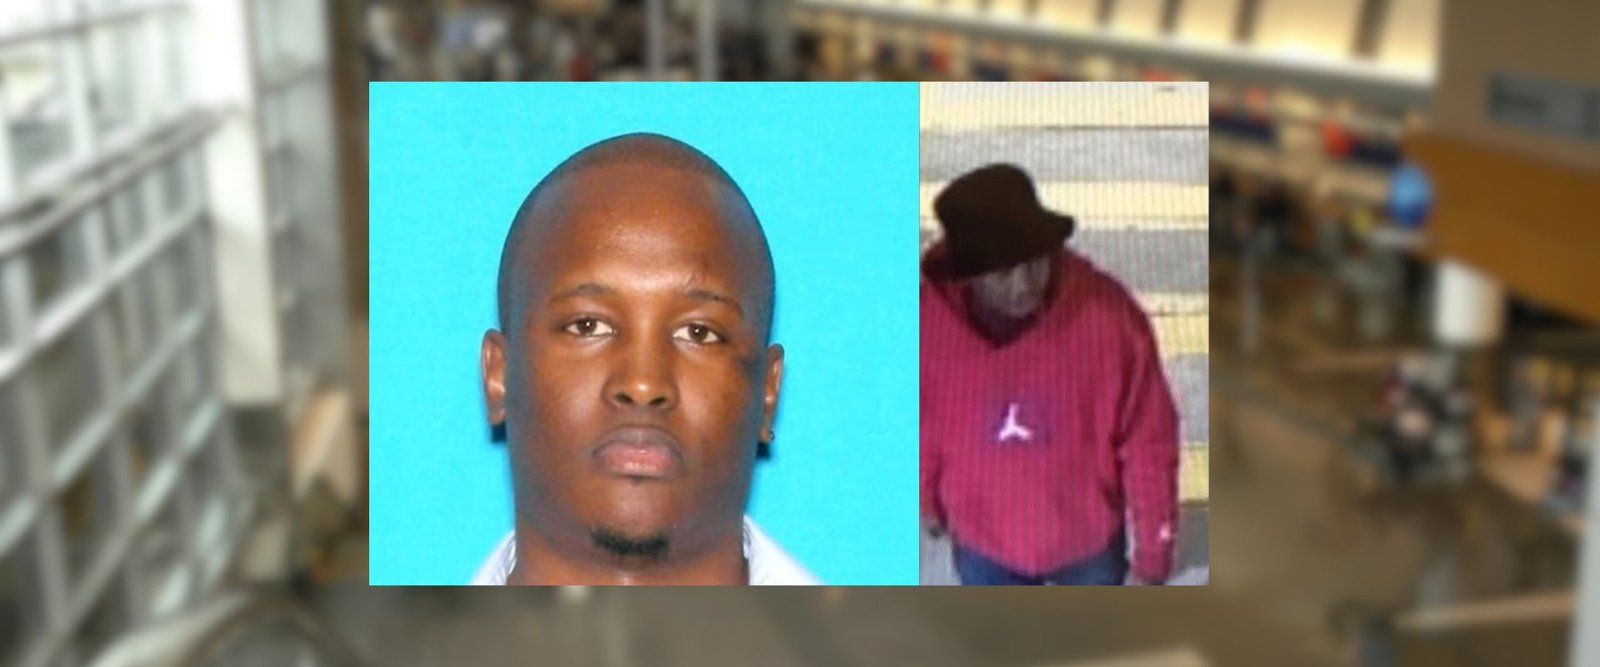 Homem suspeito de matar mulher em Massachusetts e deixar corpo no aeroporto de Boston foge da prisão no Quênia